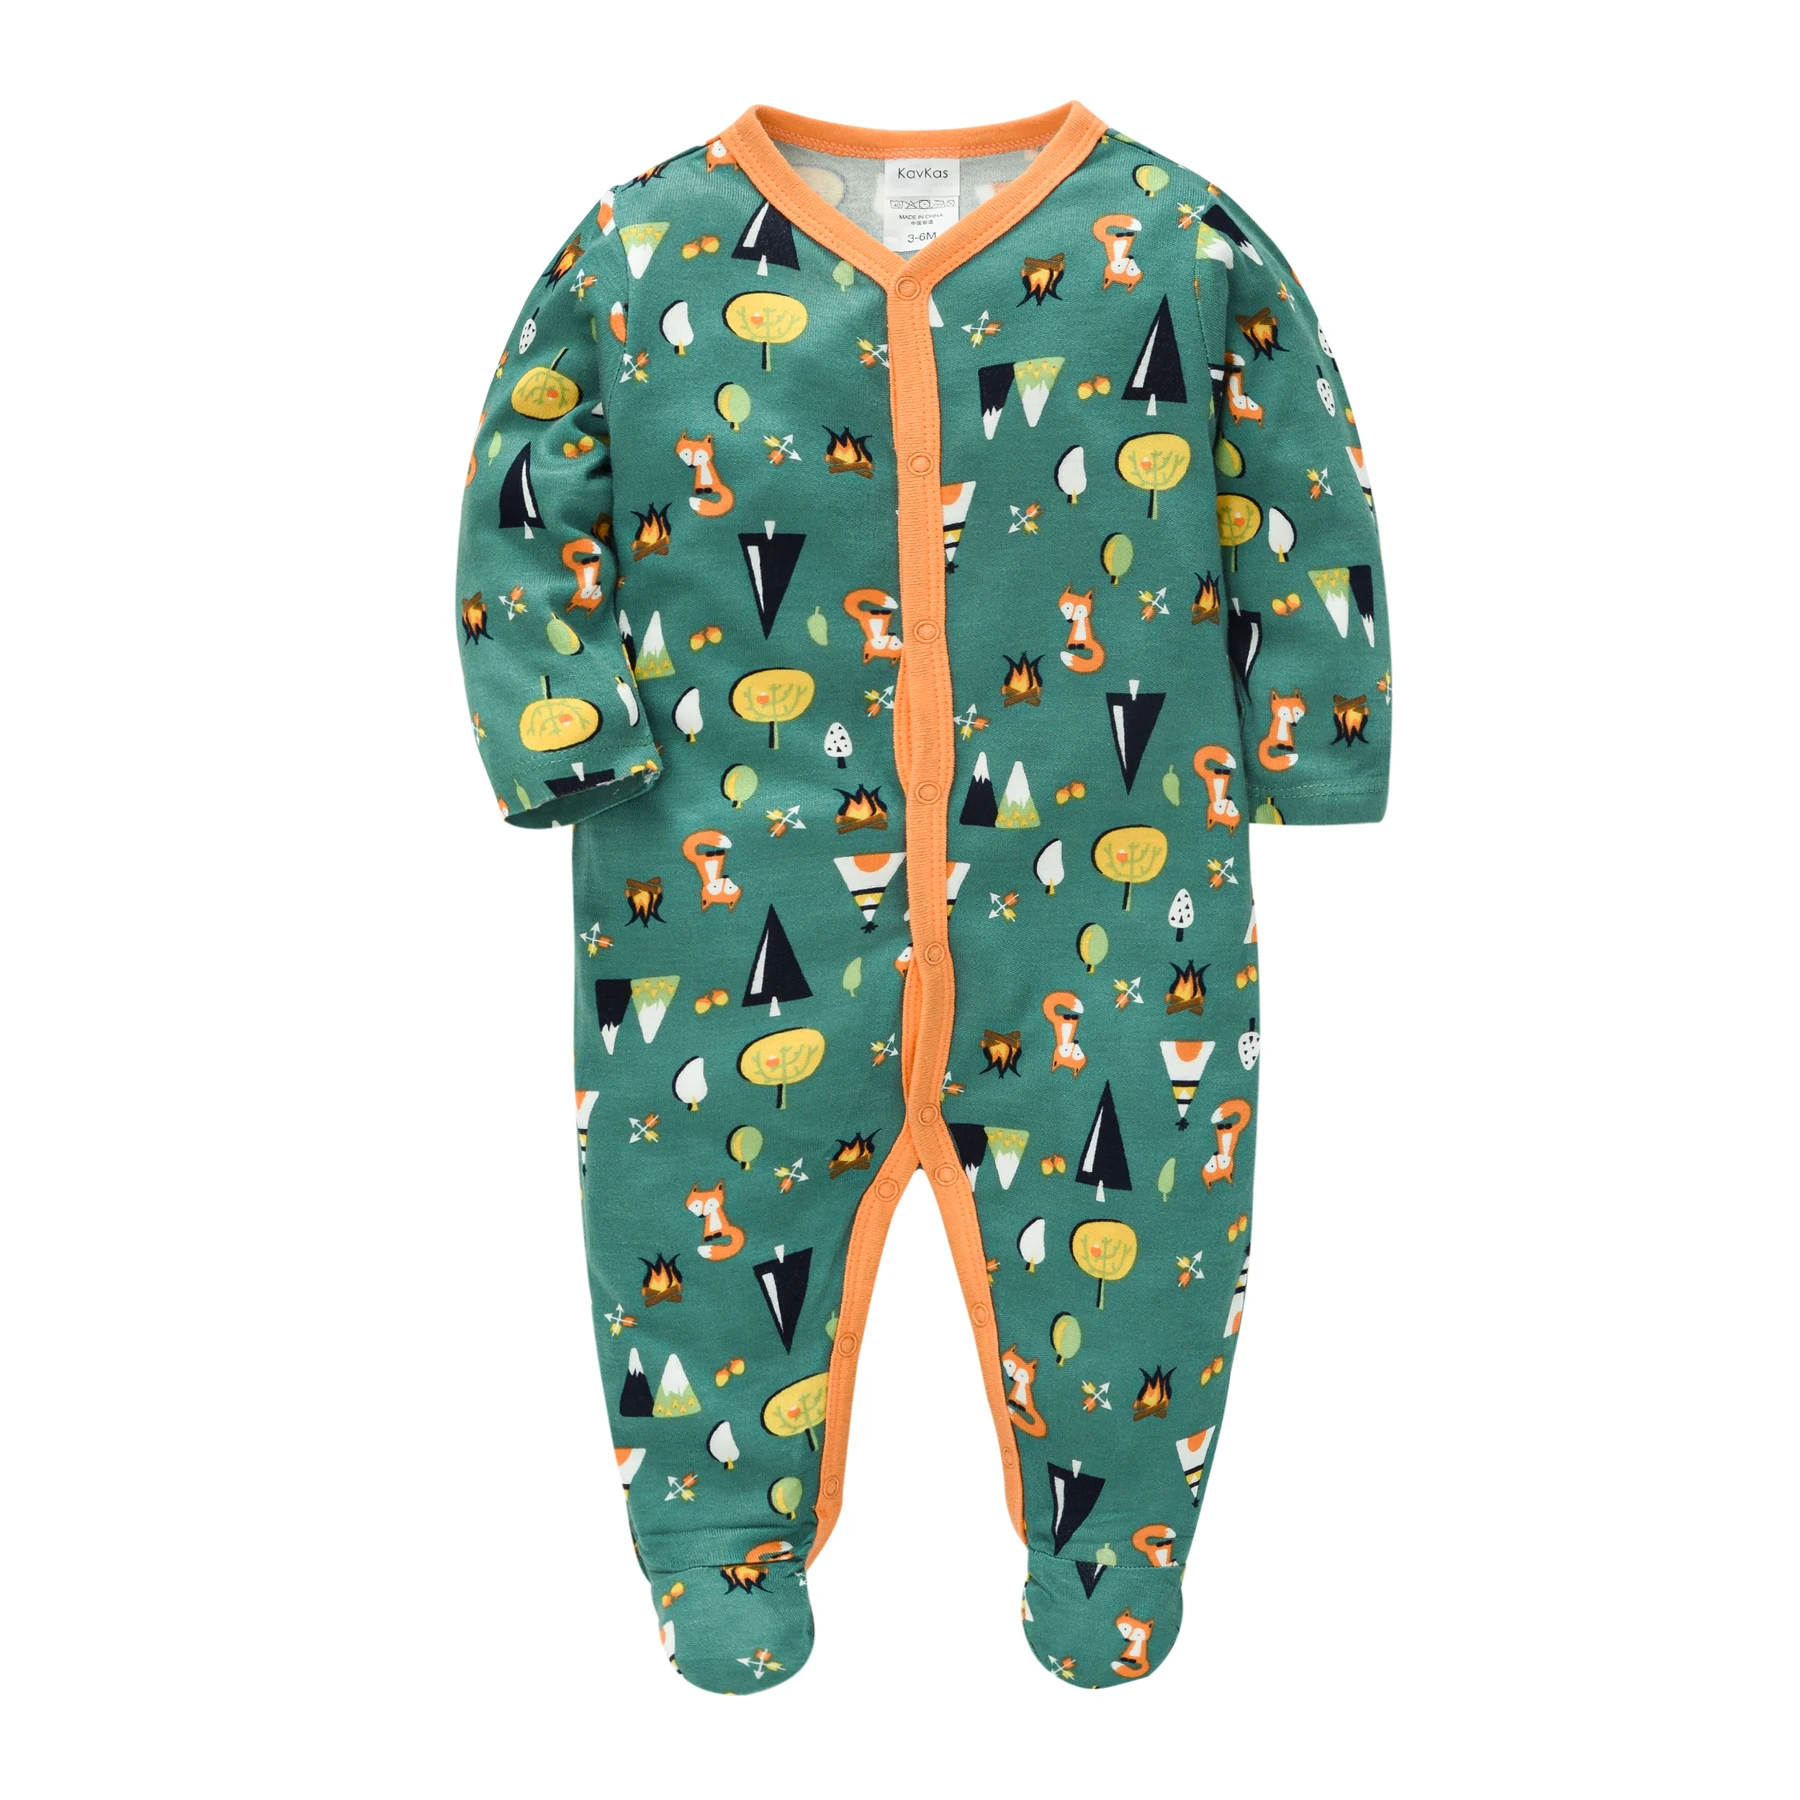 

New Born Clothes Infant Baby Boys’ Romper Animal Print Boy Playsuit Jumpsuit Pop It 100% Cotton Soft Body suit Baberos Body Bebe